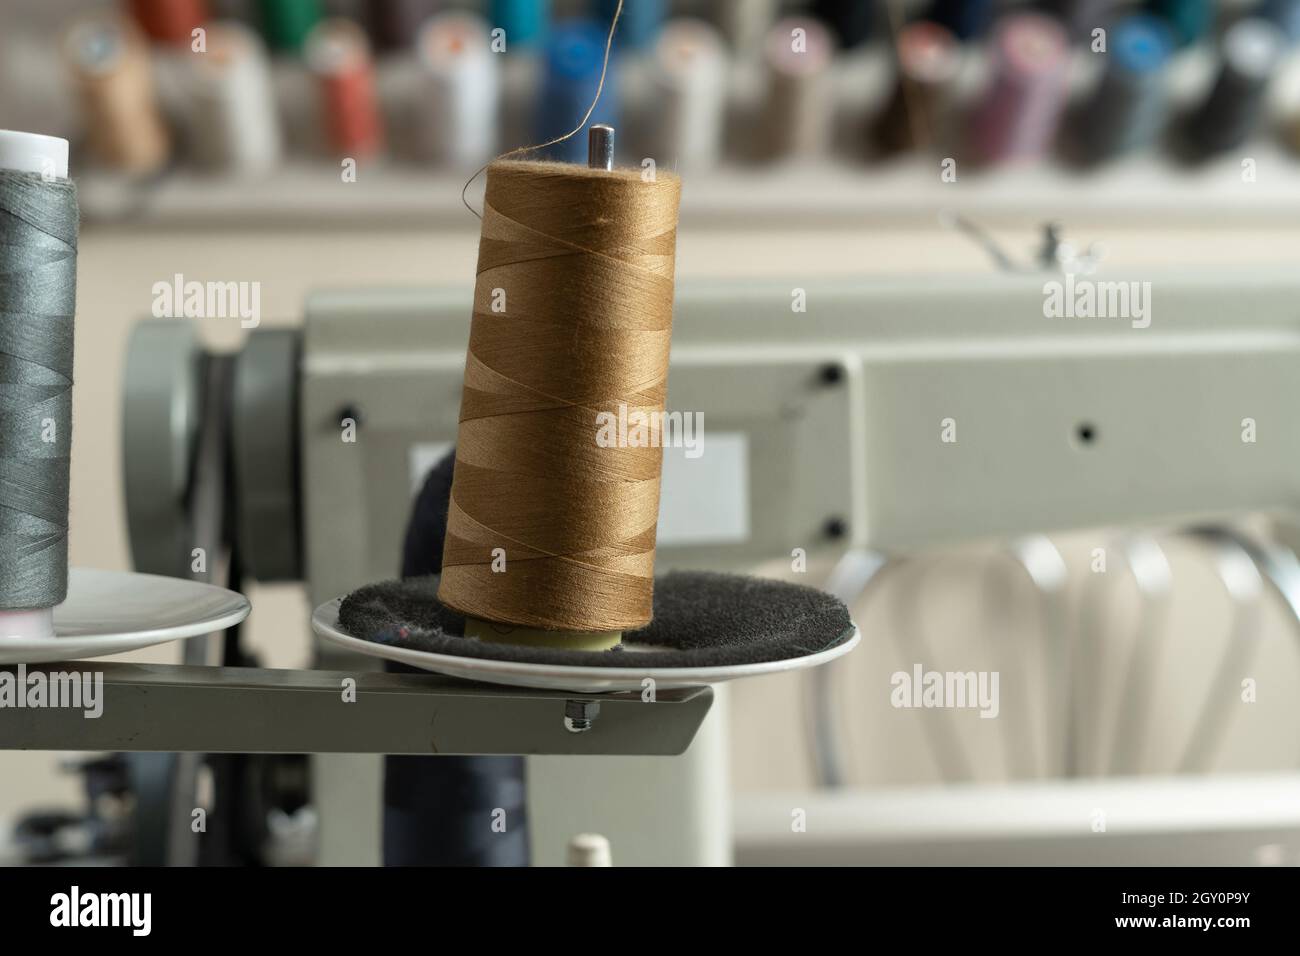 In einer Nähwerkstatt stehen Spulen aus braunem und grauem Garn auf einer Nähmaschine. Hochwertiges Nahtmaterial in der Produktion. Stockfoto